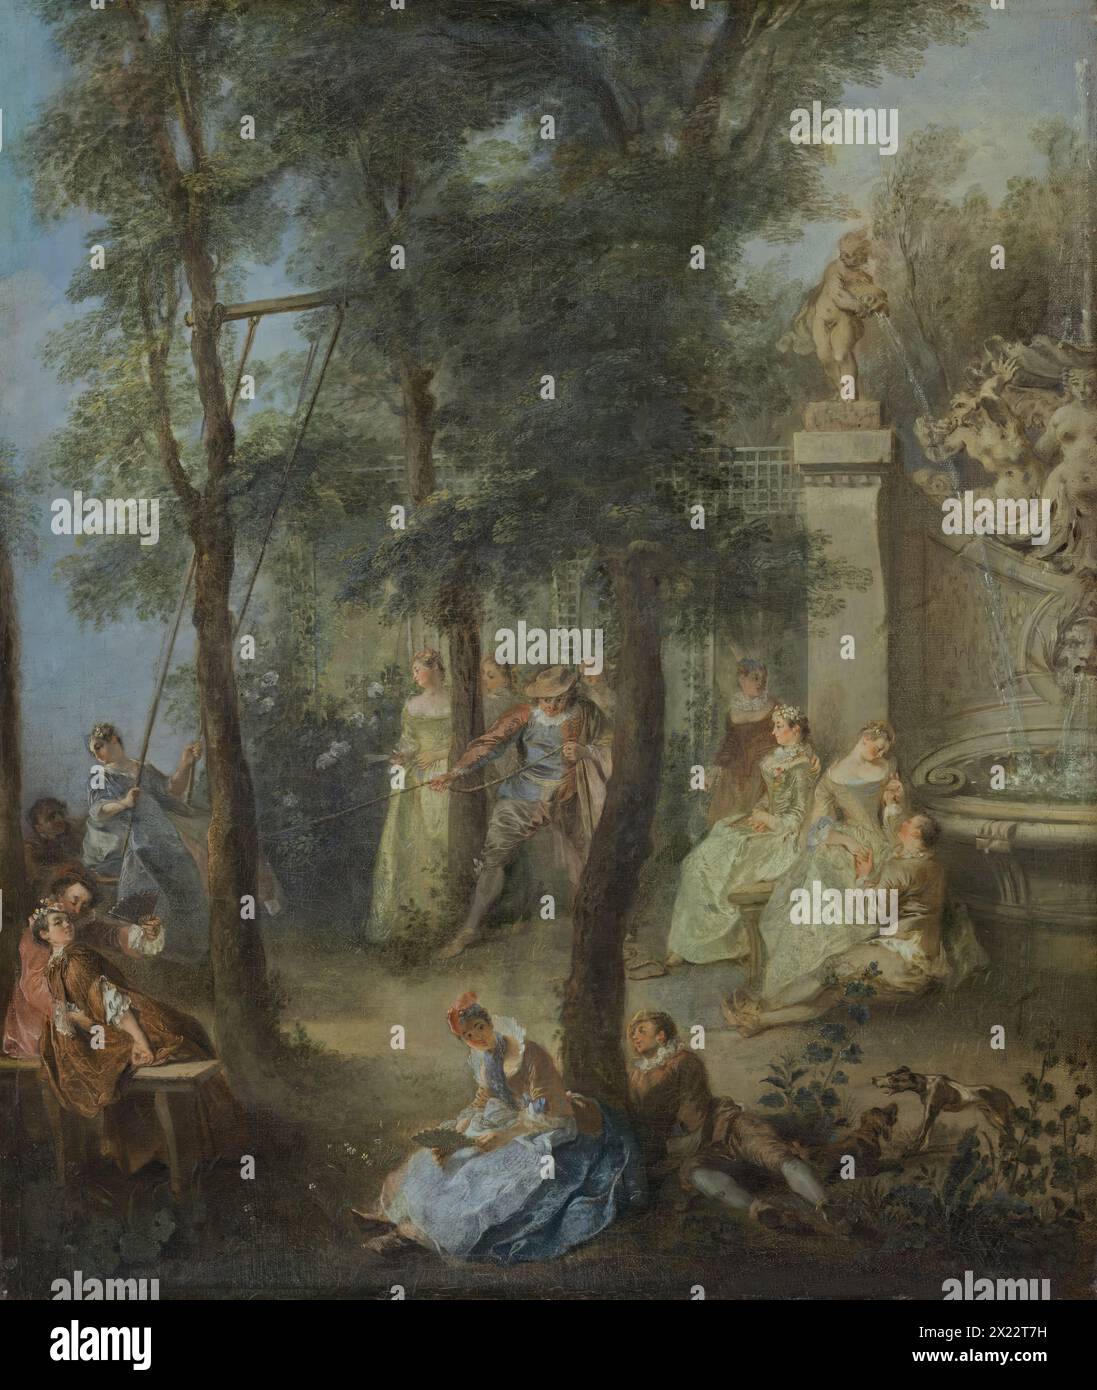 The Swing, 1735. Die Figuren sind gruppiert um drei Bäume angeordnet, deren Stämme aufgrund der zwischen ihnen sichtbaren Räume ein Gefühl der Tiefe erzeugen und auch die Anordnung der verschiedenen Szenen bestimmen. Den im Vordergrund amourös flirtenden Paaren folgt das Hauptmotiv der Schaukel im Mittelgrund nach links. Eine Frau, die auf der Schaukel sitzt, wird von zwei Männern geschoben, einer hinter ihr und der andere zieht energetisch an einem Seil in der Mitte der Komposition. Der Hintergrund umfasst mehr amouröse Paare, die am Rand des Brunnens sitzen. Die Rhythmen des Stockfoto